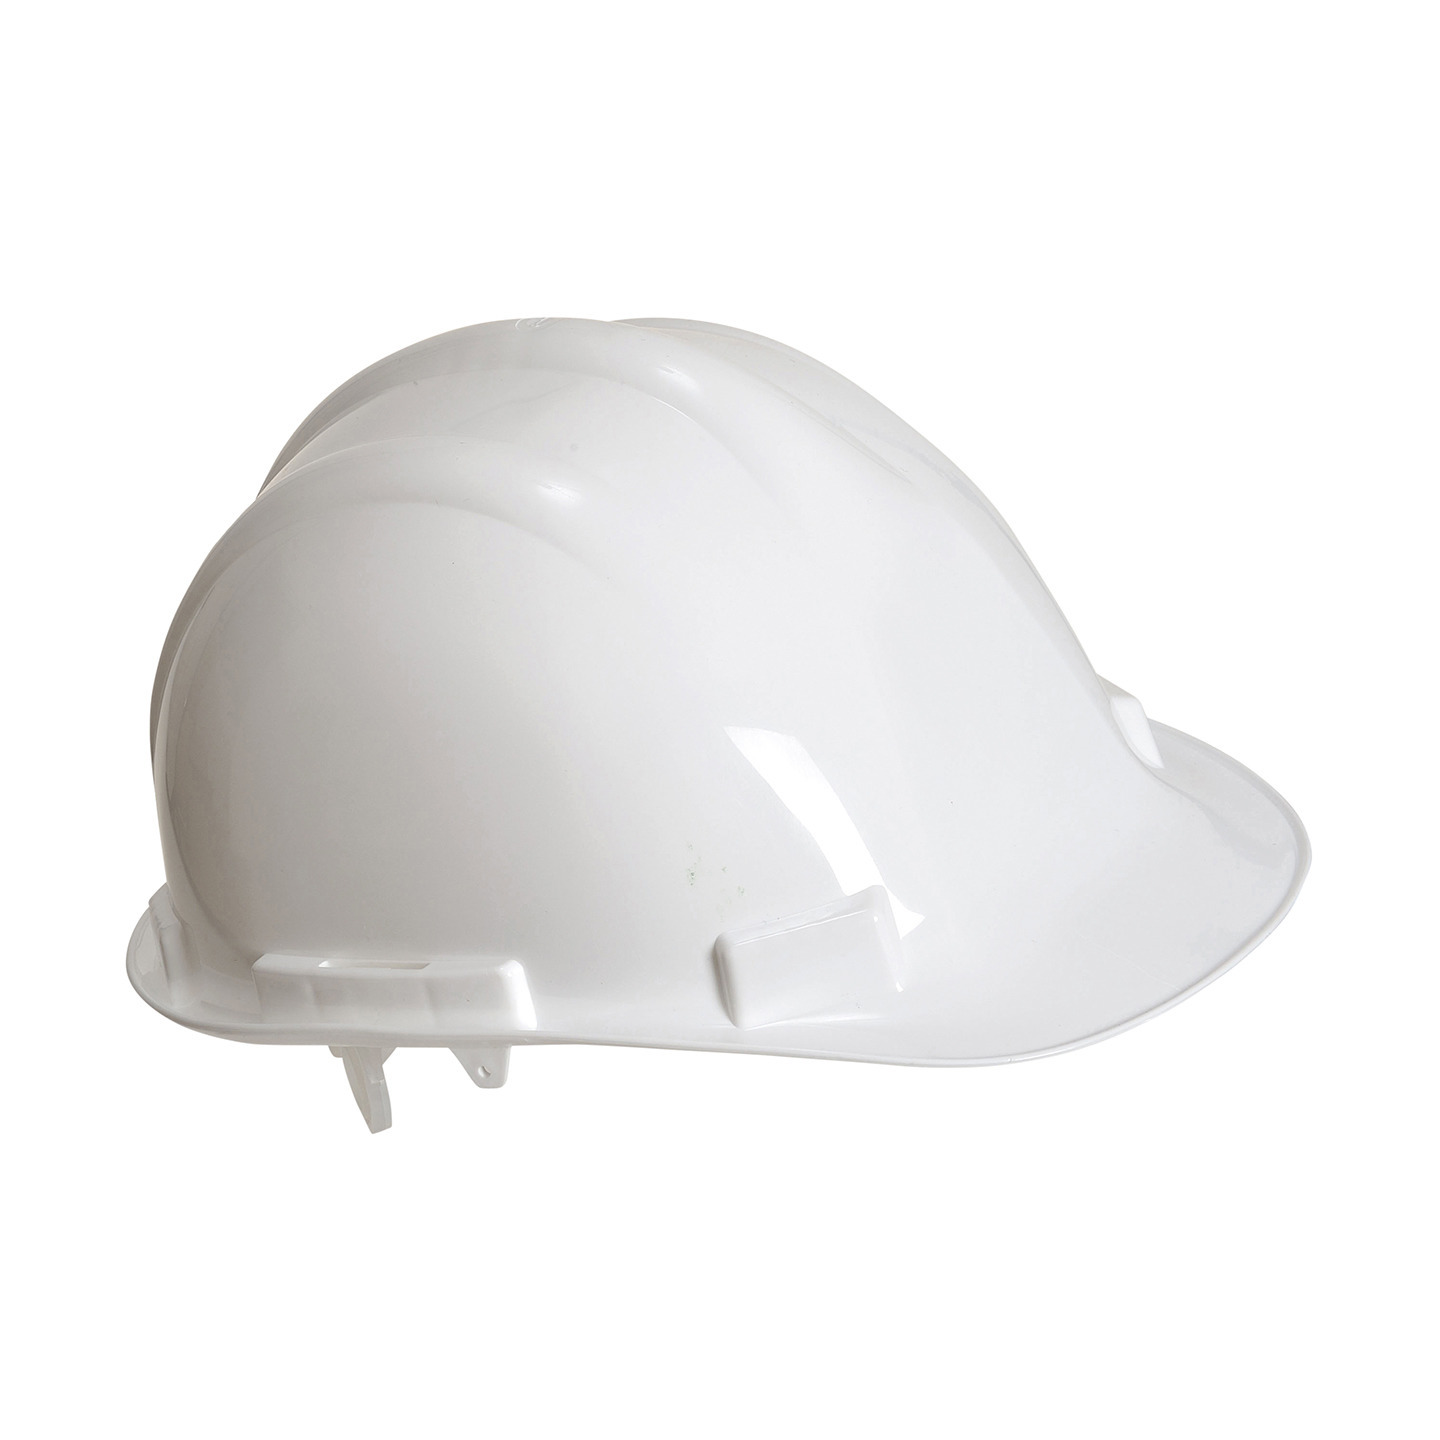 Veiligheidshelm/bouwhelm hoofdbescherming wit verstelbaar 55-62 cm